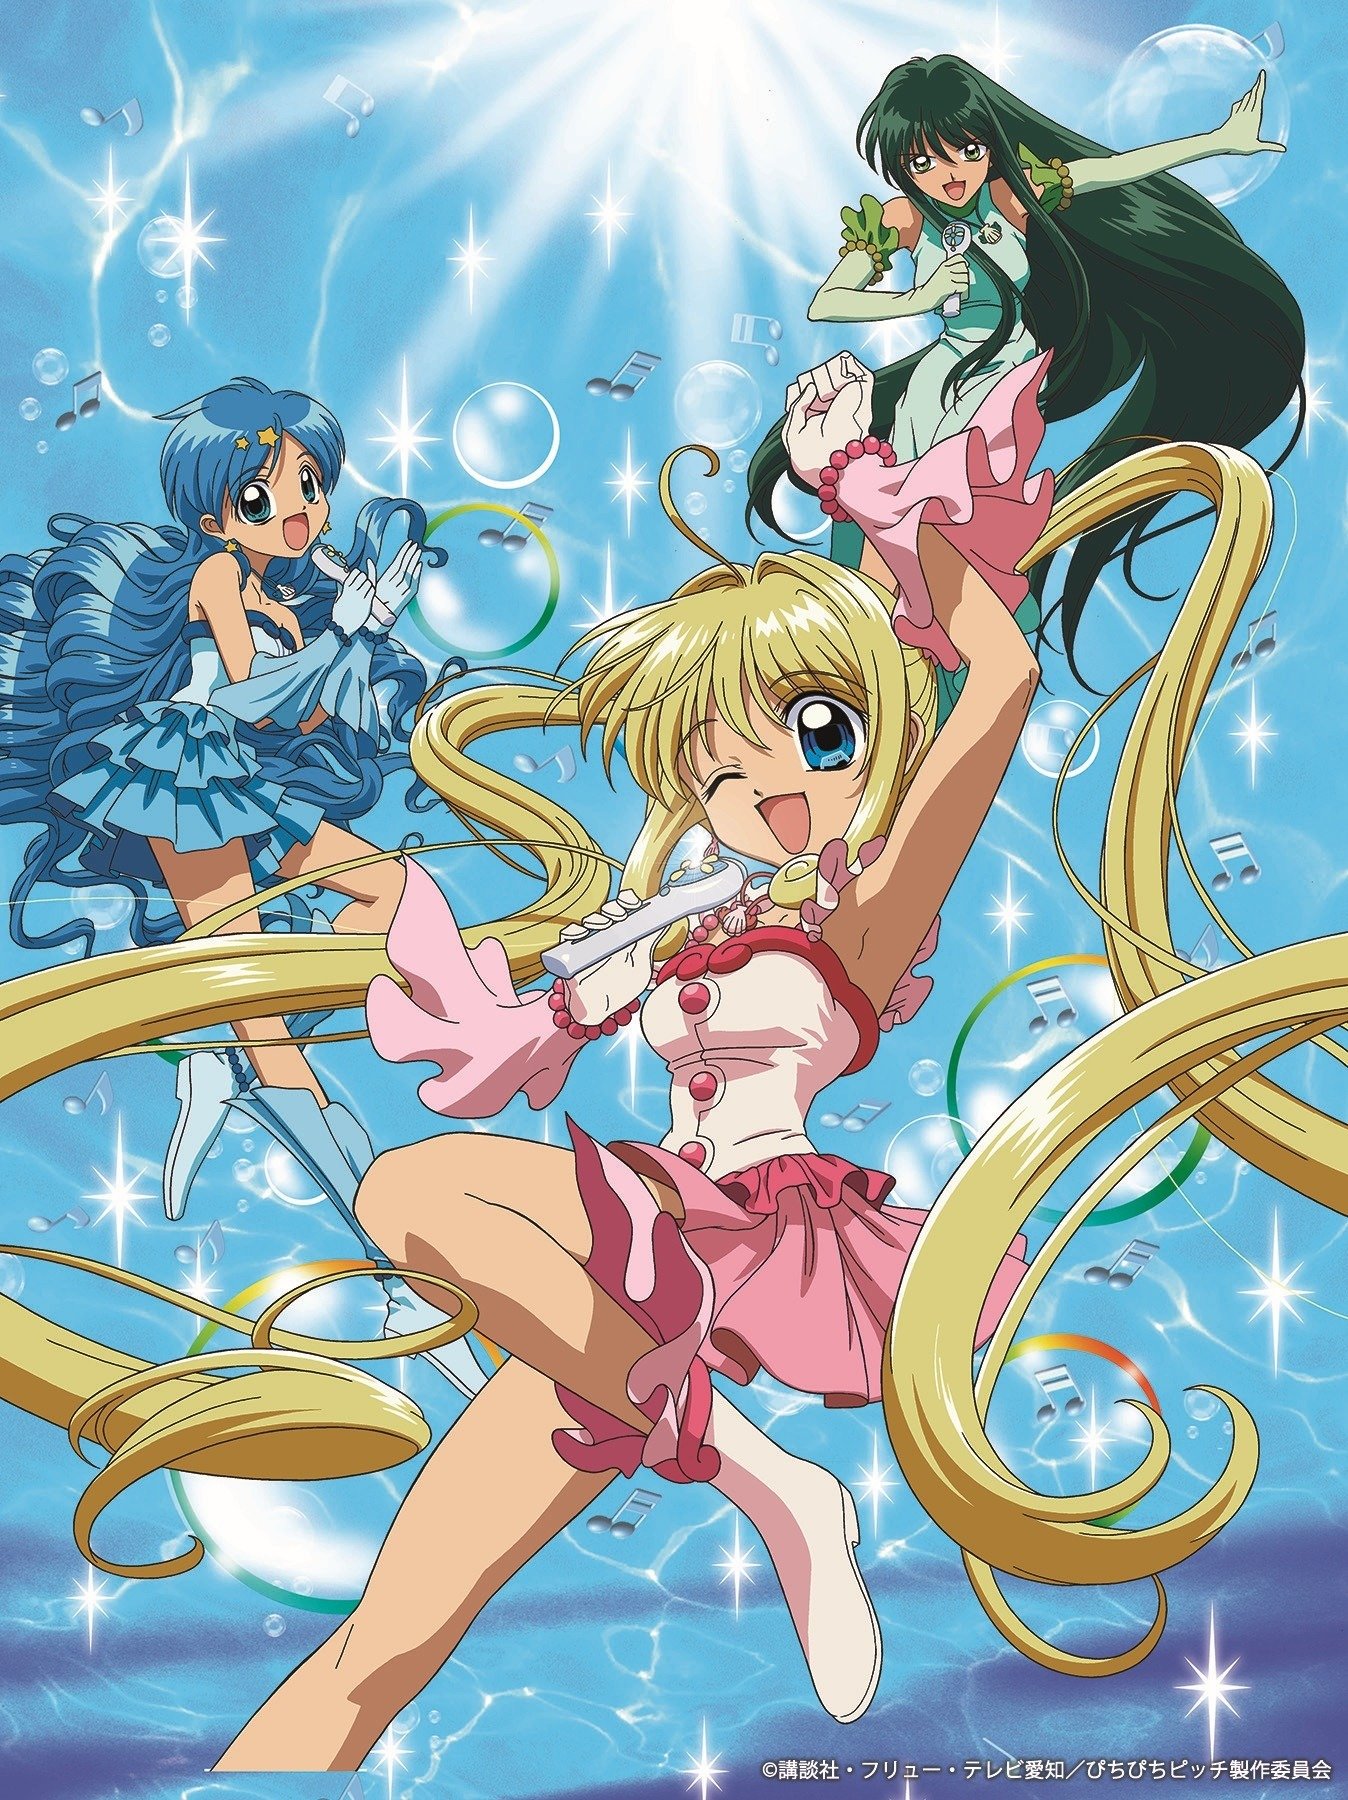 Lucia Nanami Anime Mermaid Melody Pichi Pichi Pitch Season 2, Anime, manga,  disney Princess png | PNGEgg